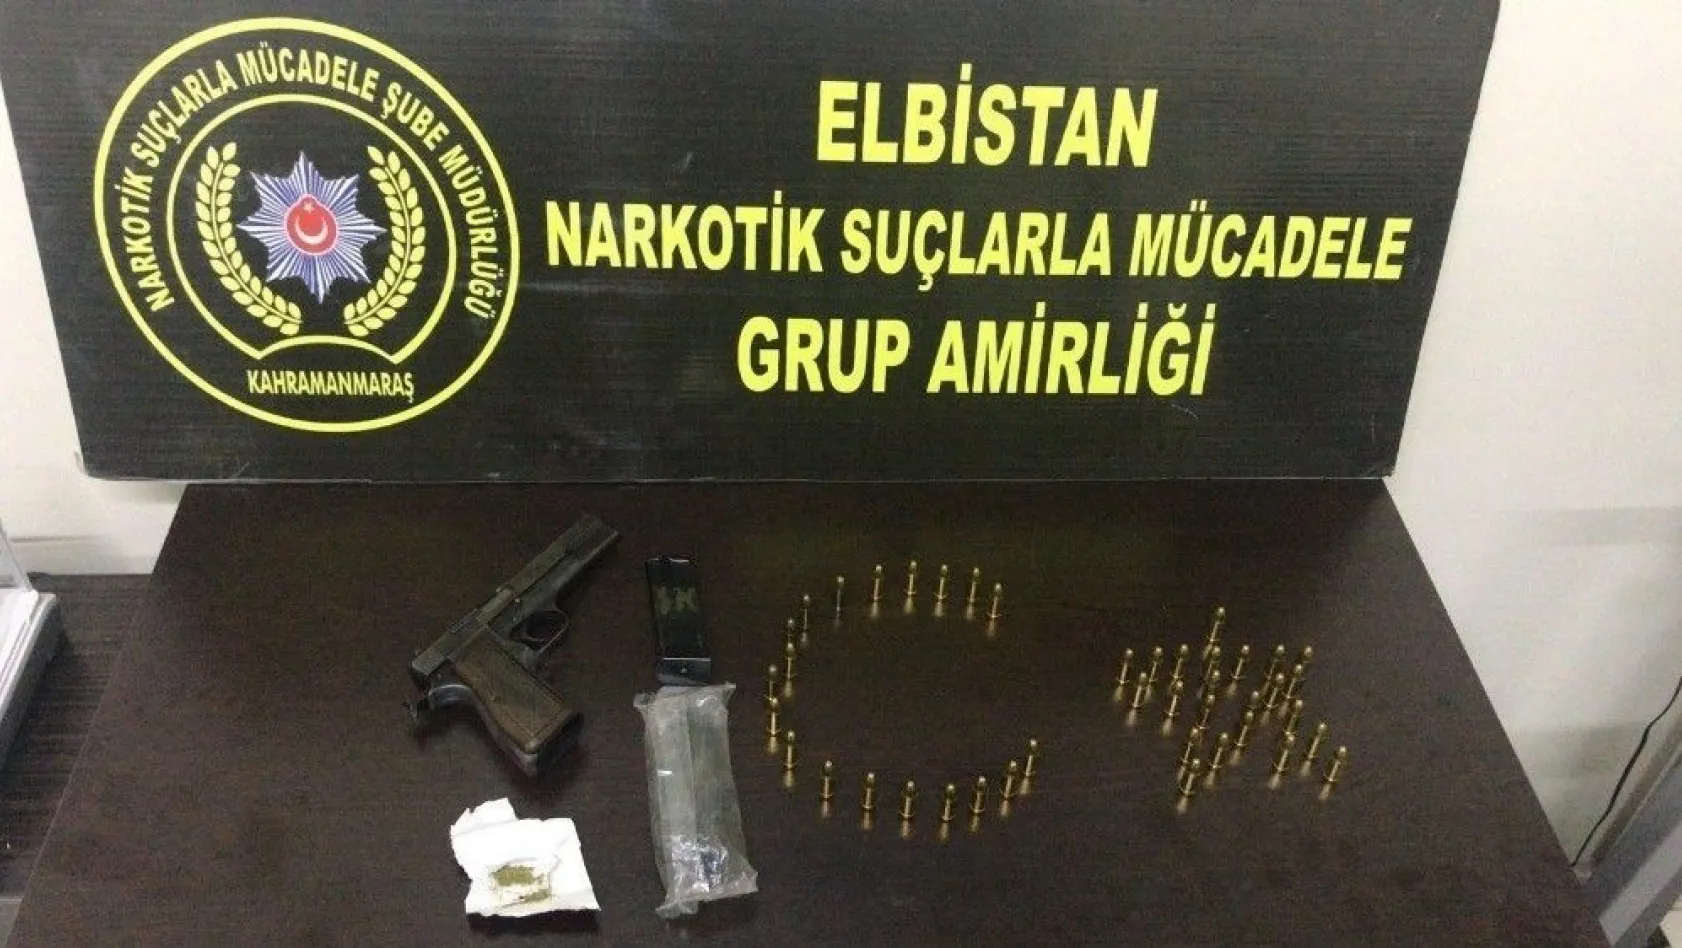 Elbistan'da uyuşturucu operasyonunda 1 kişi tutuklandı
